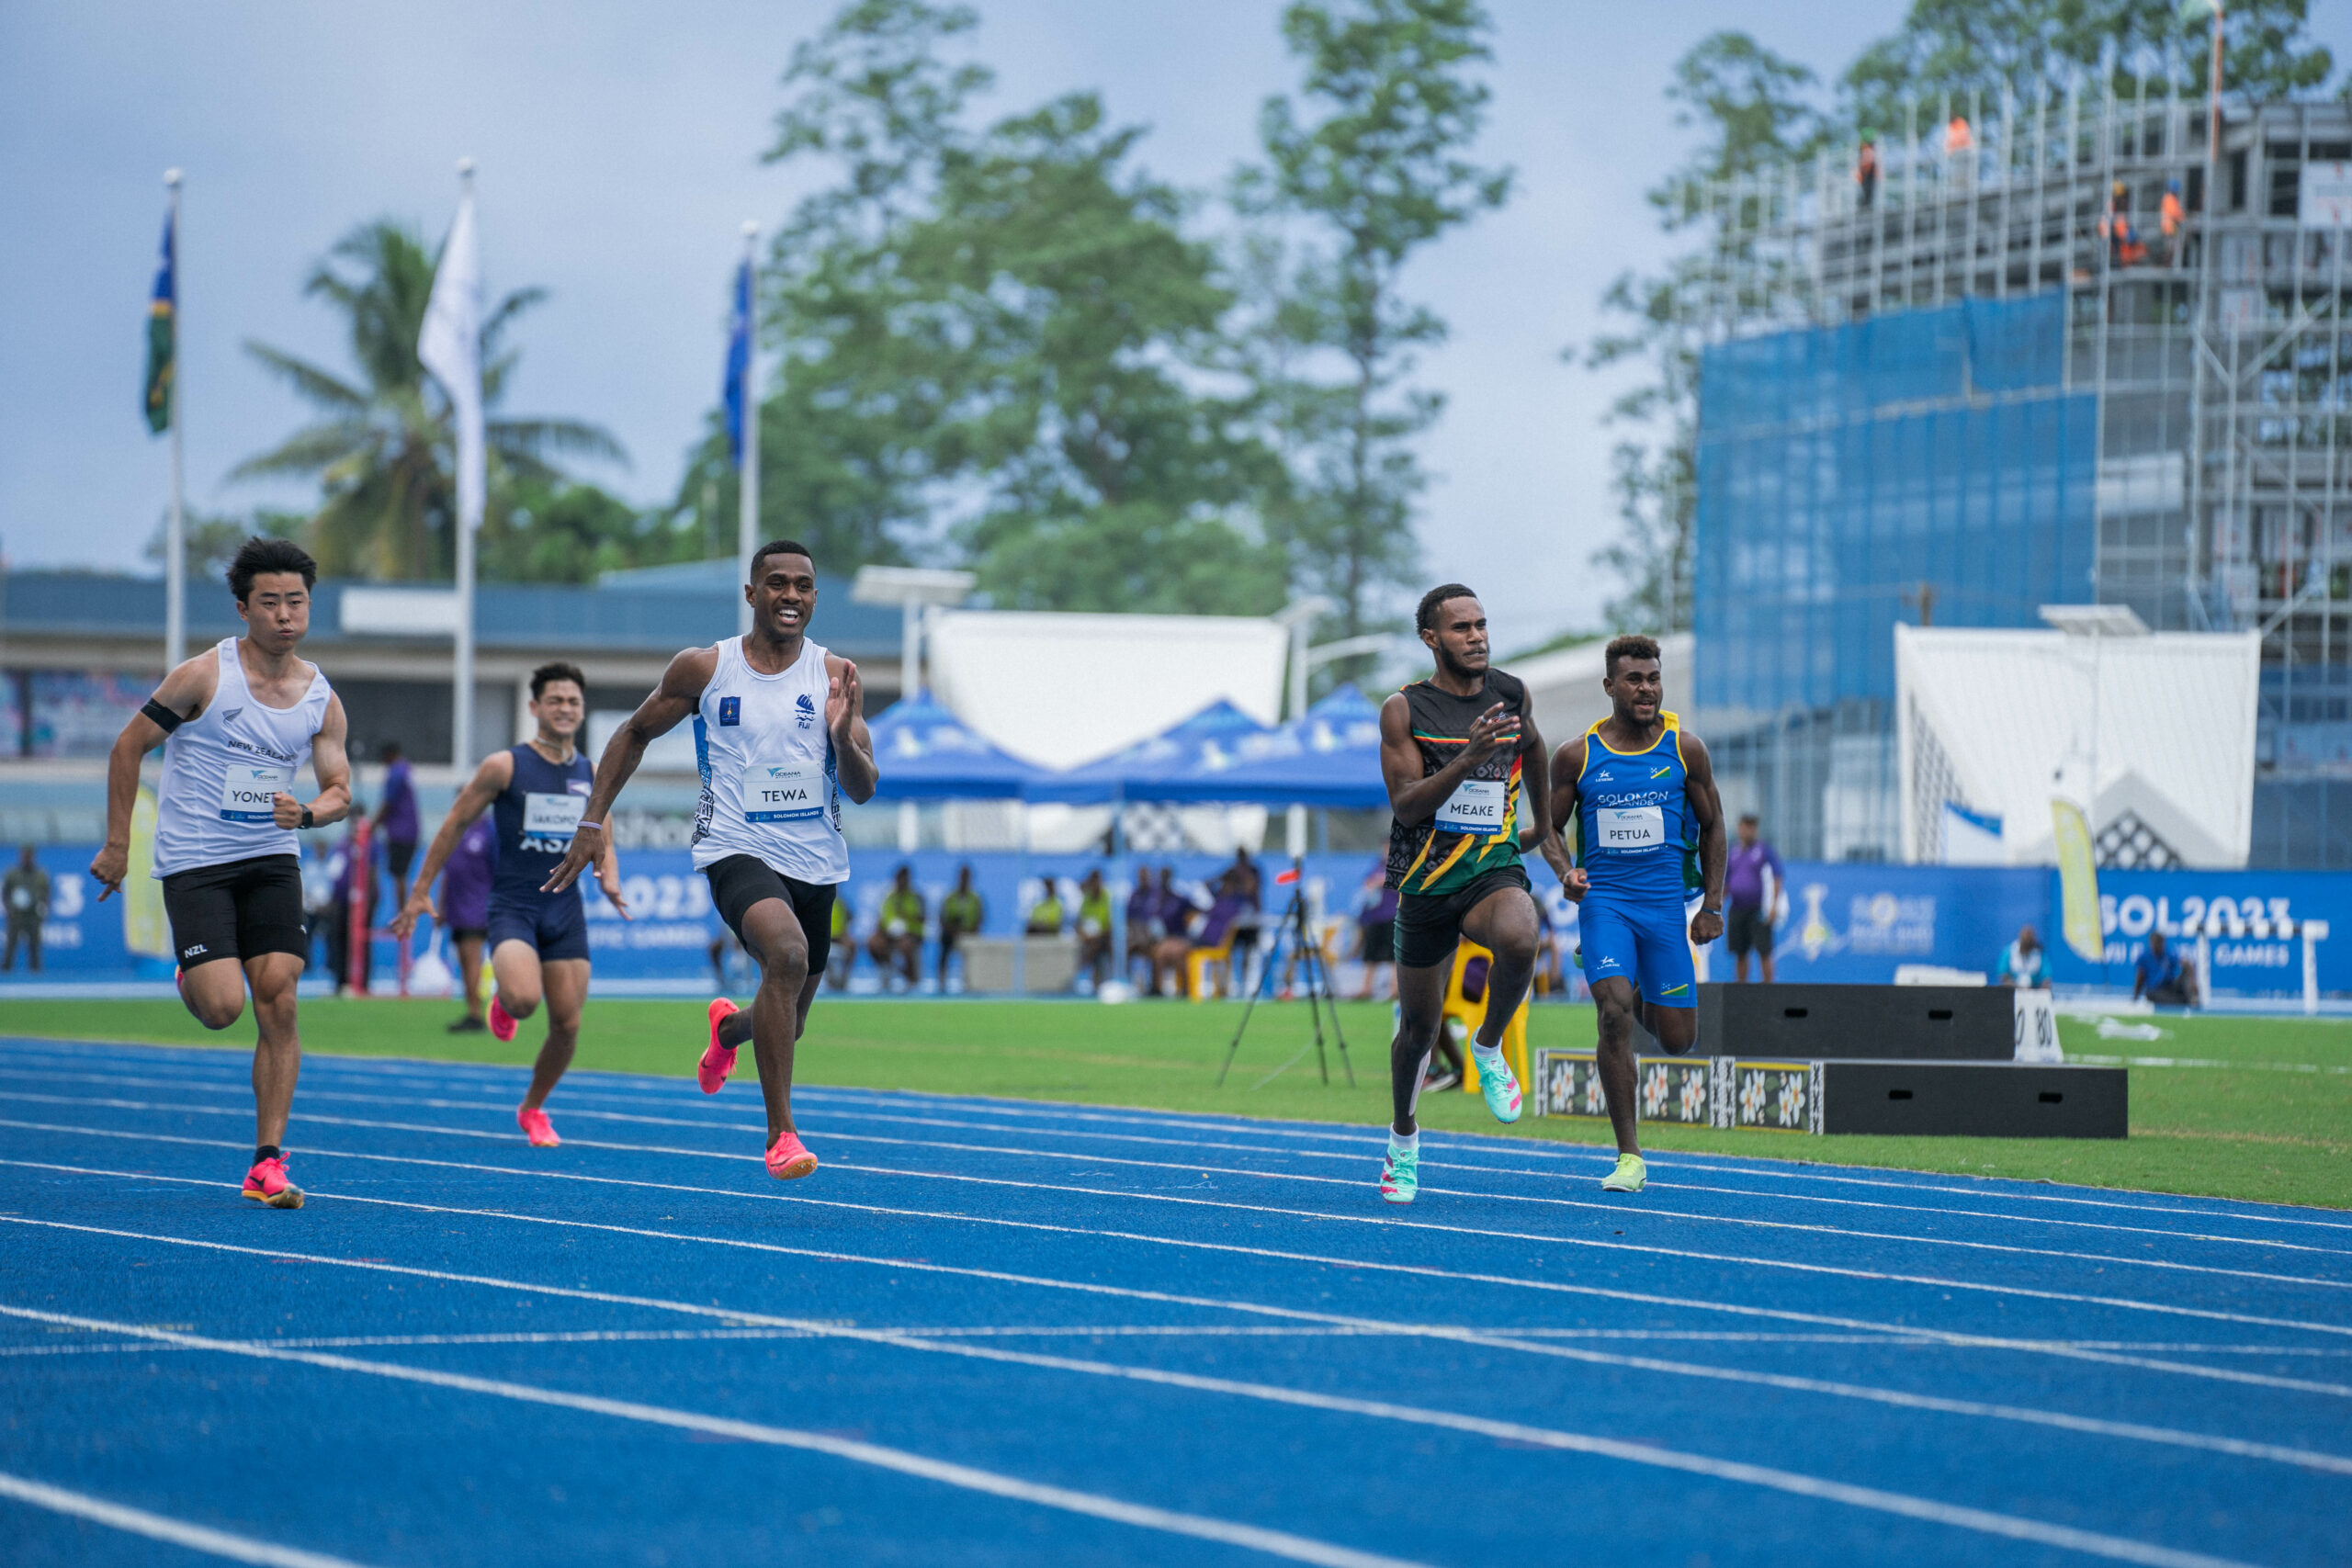 Men running a sprint race